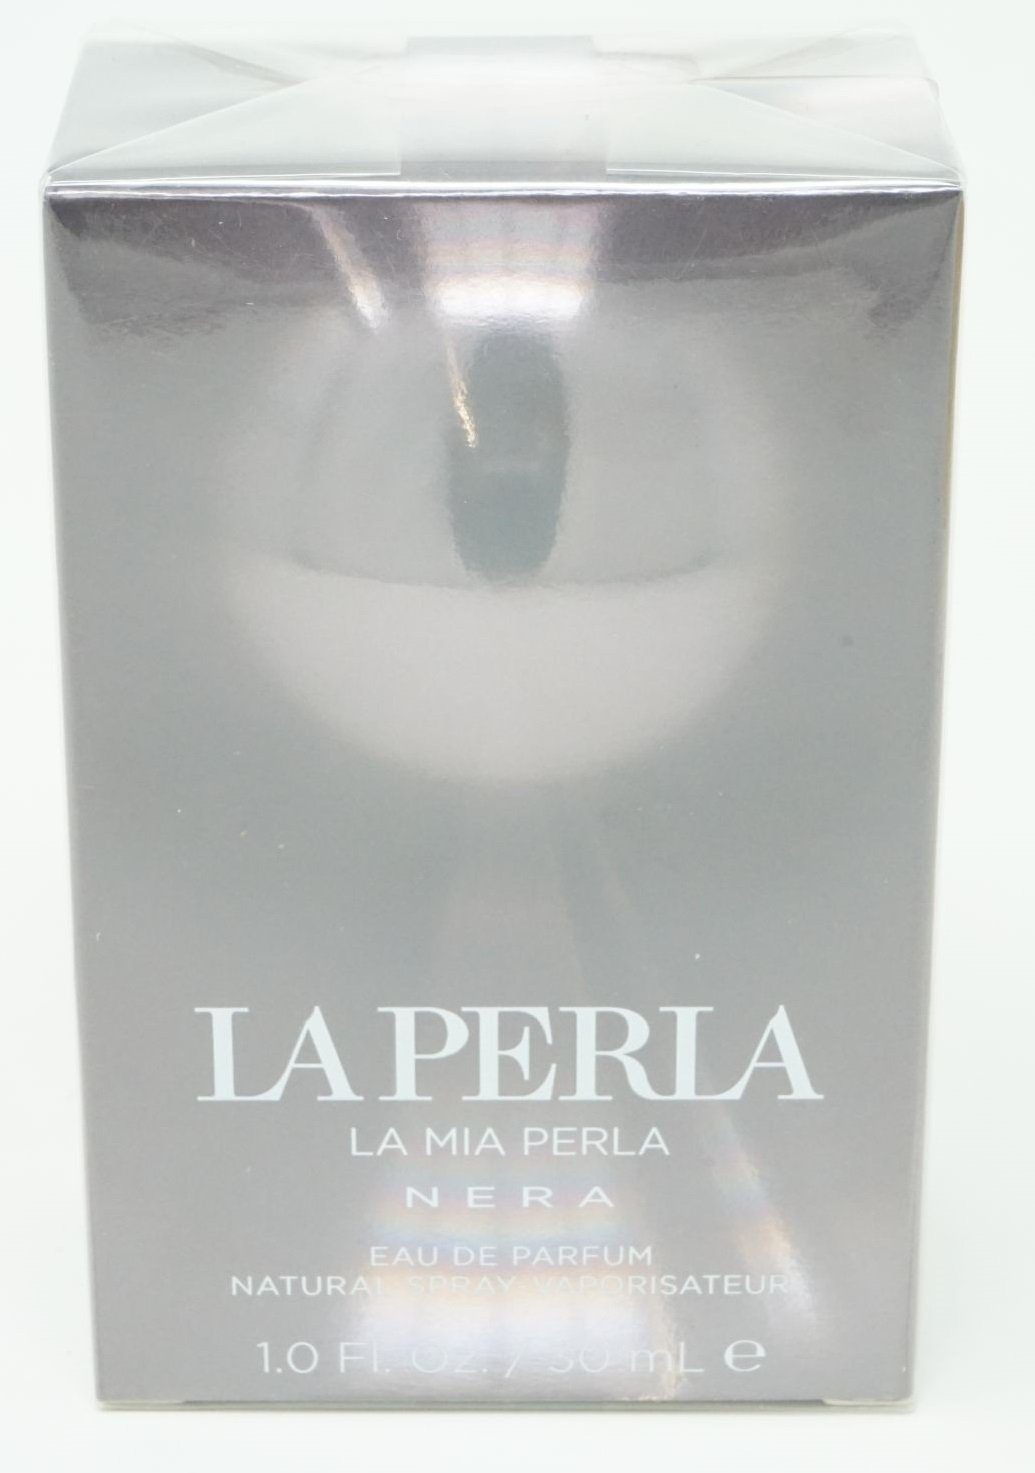 La Perla Парфюми La Perla La Mia Perla Nera Eau de parfum Spray 30 ml